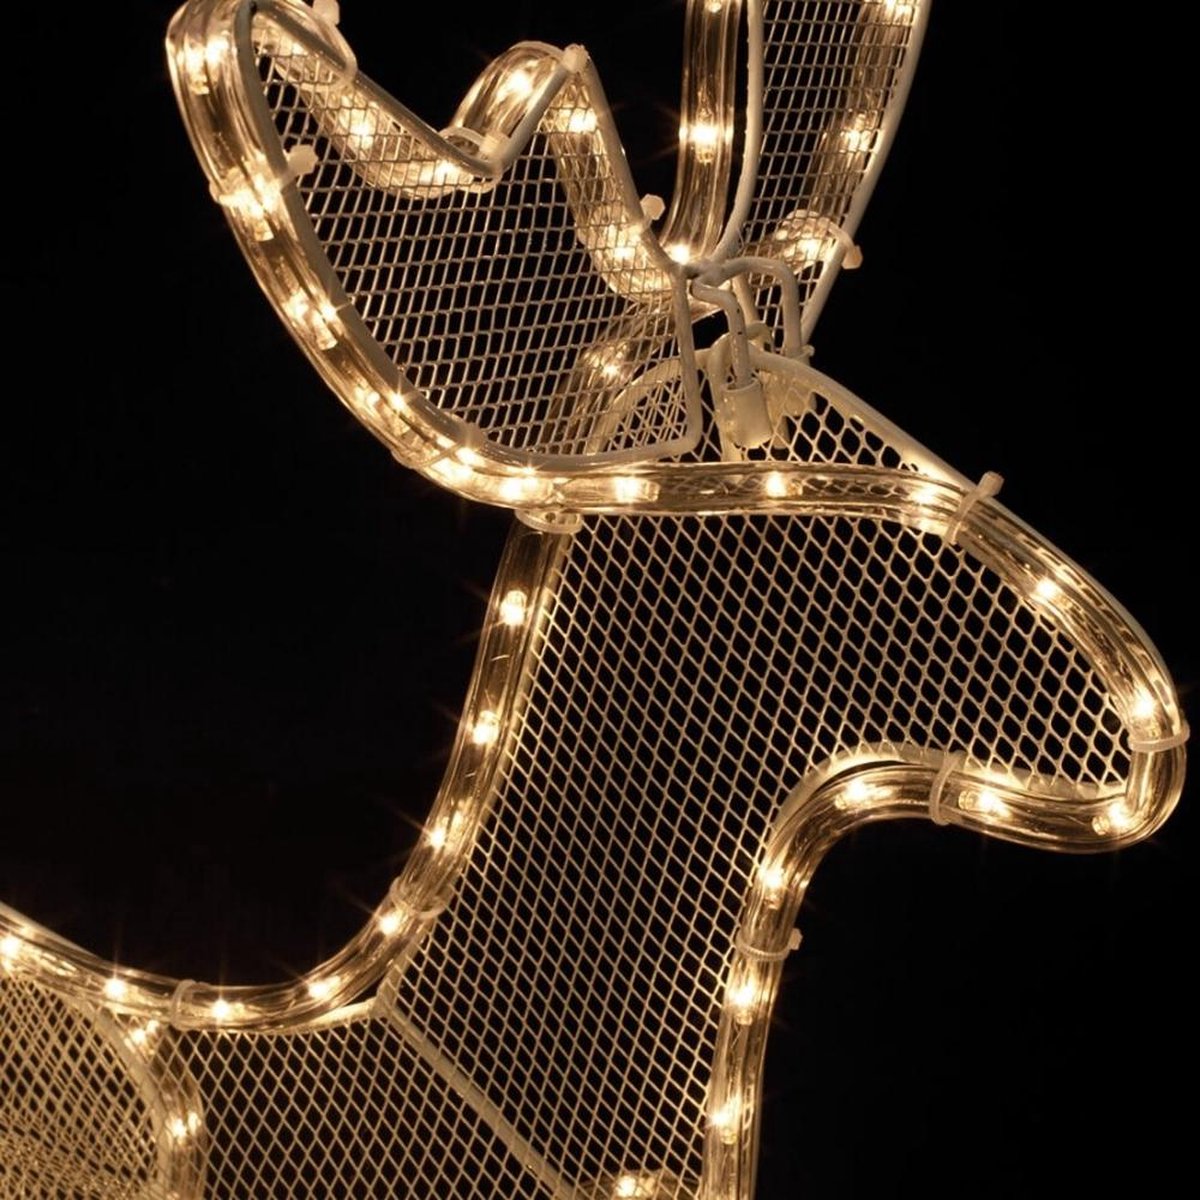 VIDAXL Decoration de Noël Renne et traîneau 100 LED exterieur blanc pas  cher 